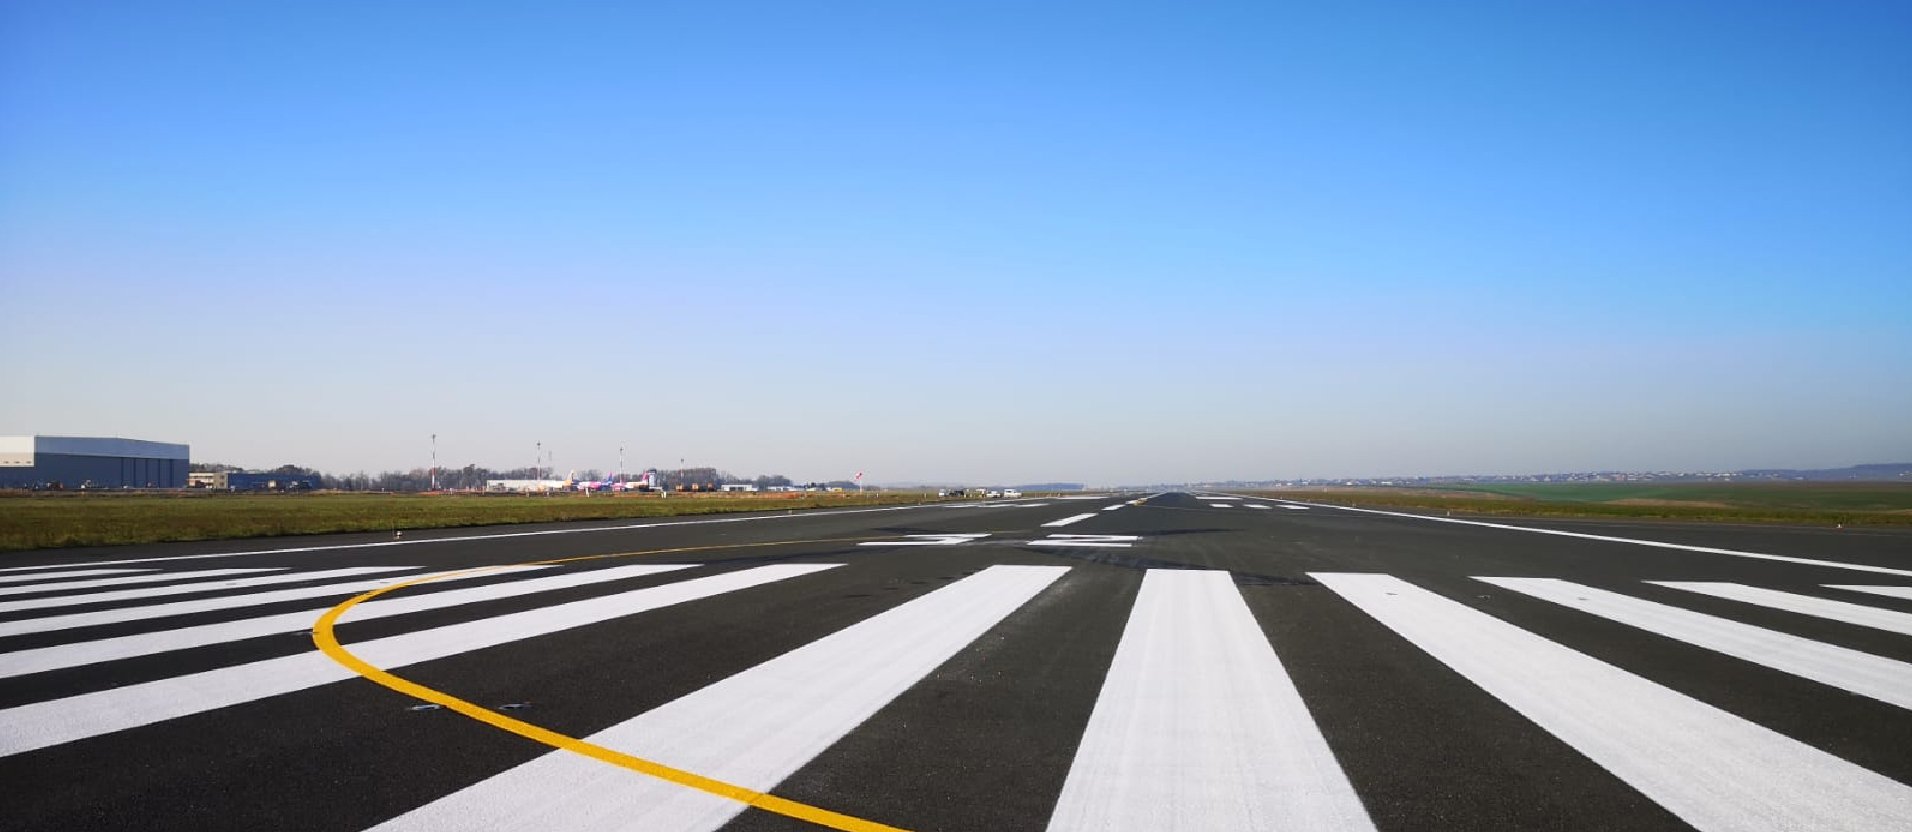  Punct final în proiectul de dezvoltare a infrastructurii aeroportuare început în 2013